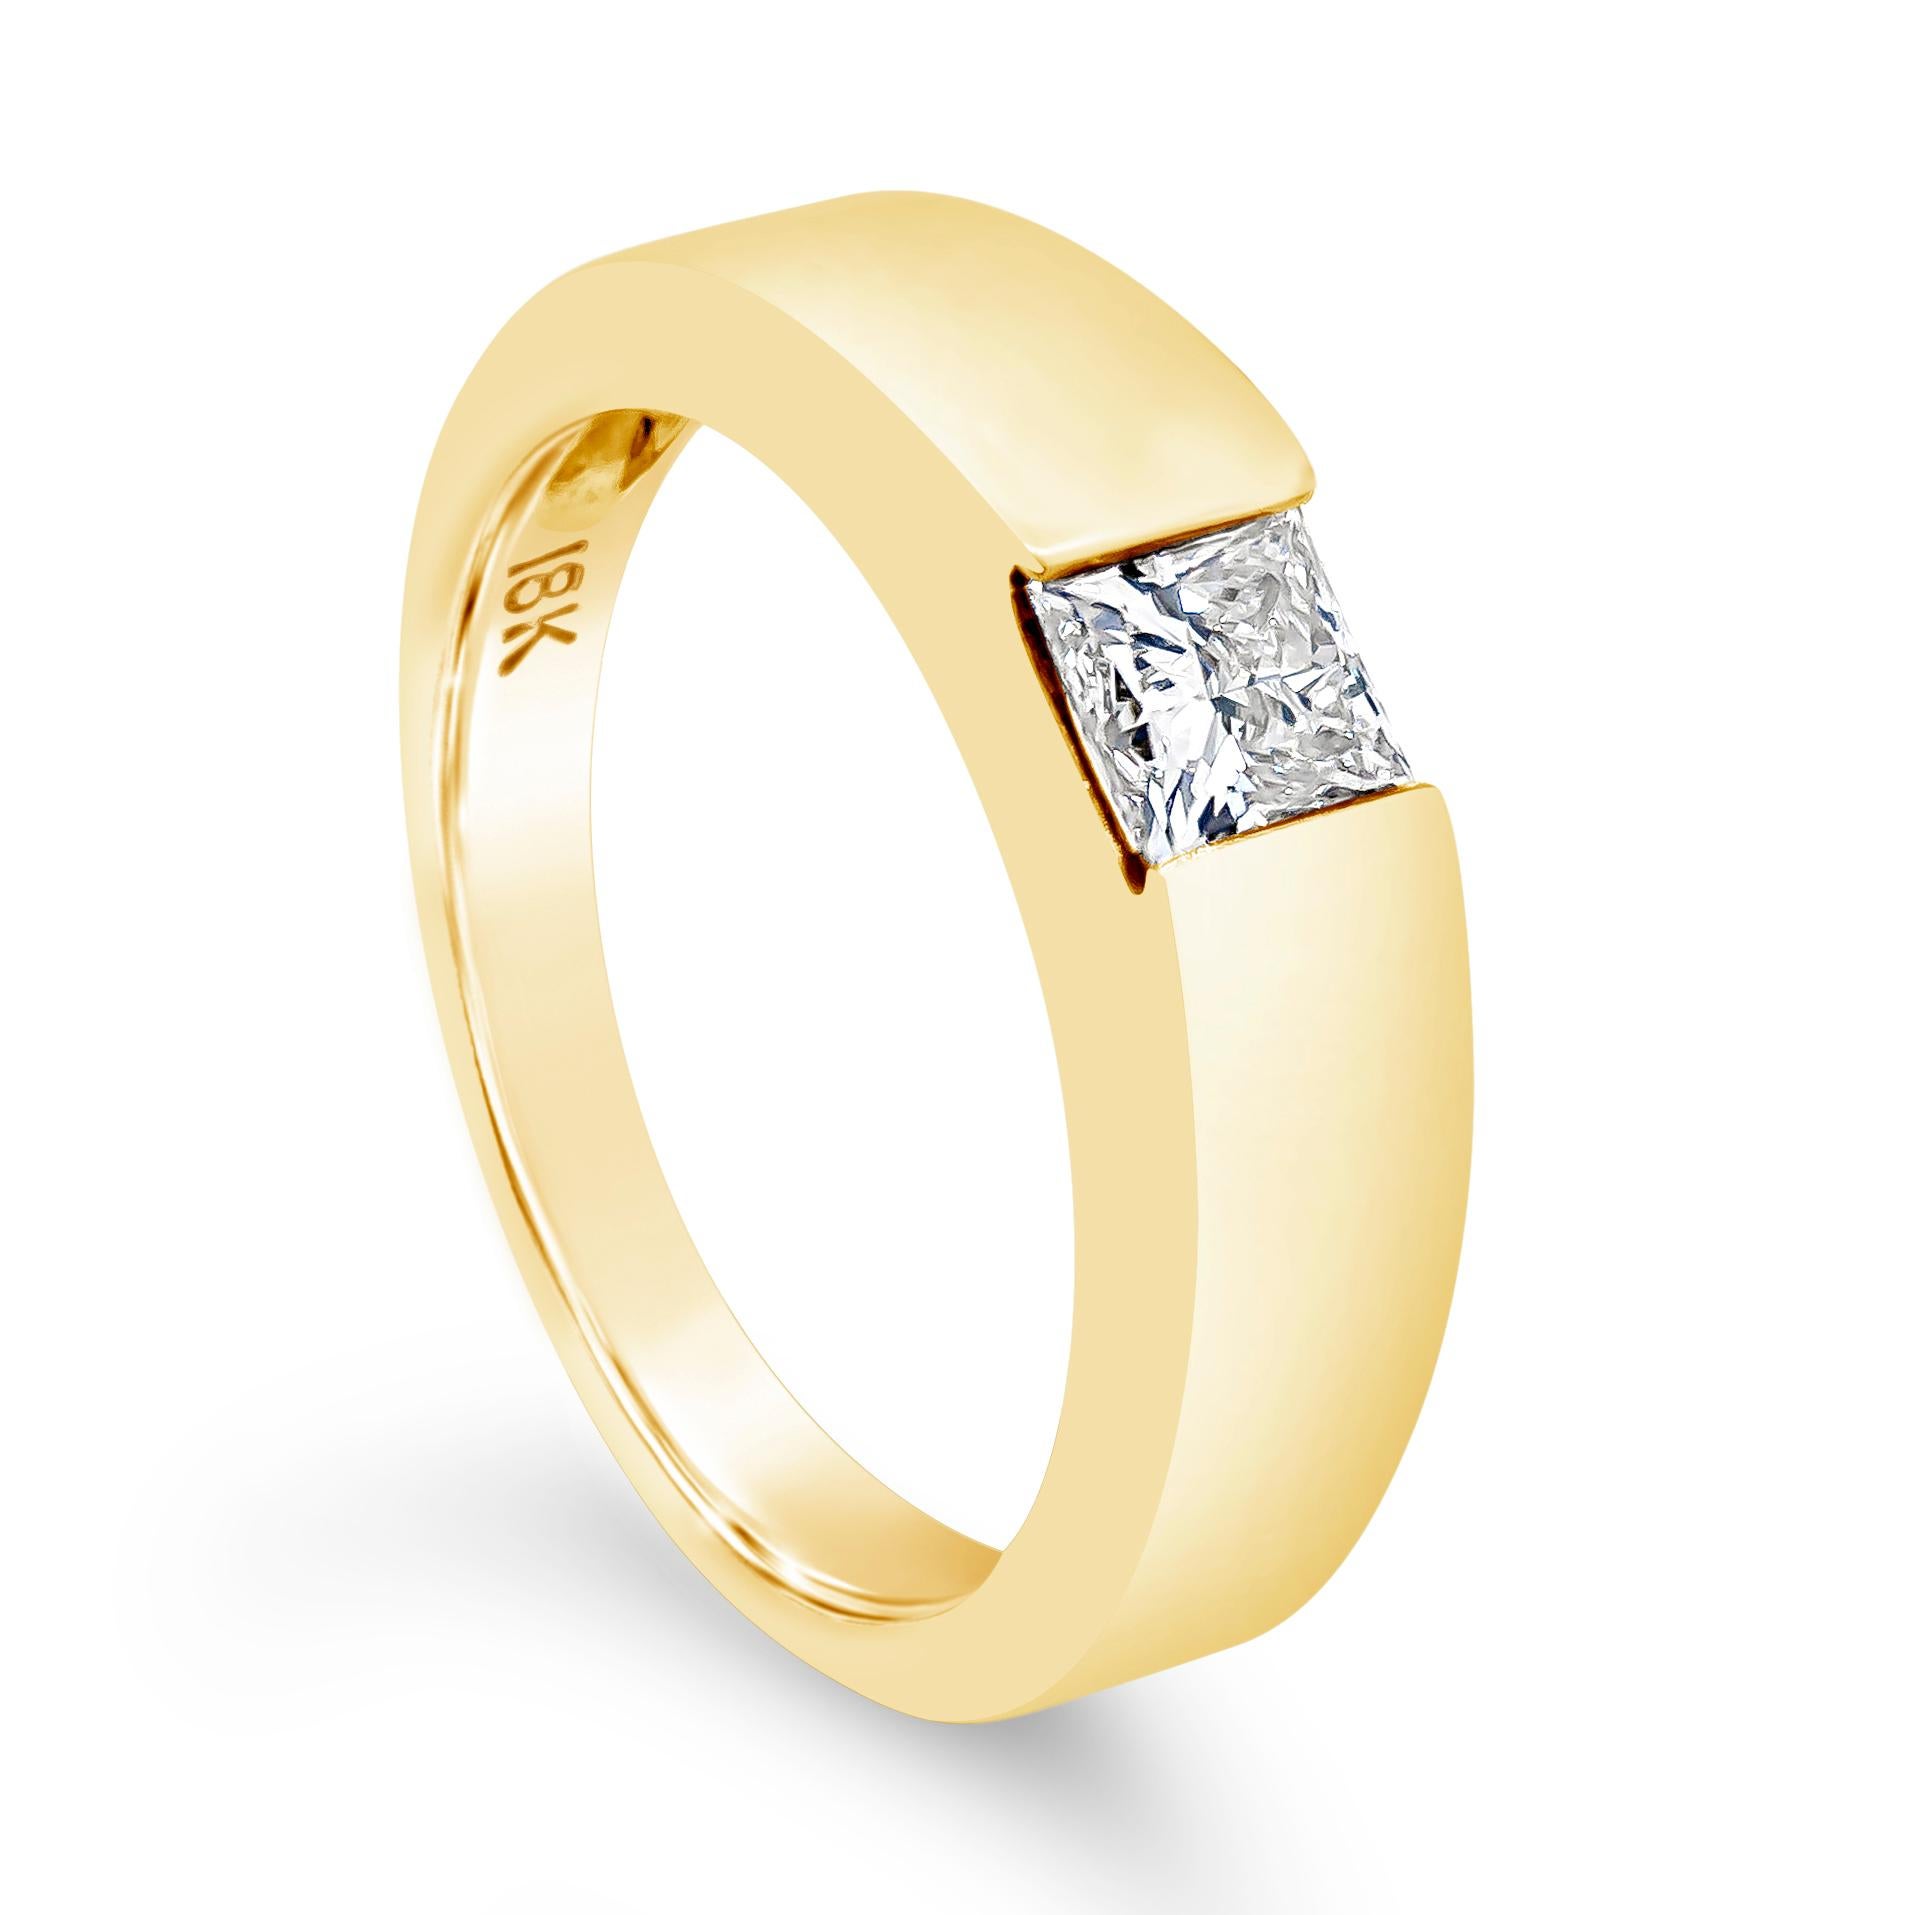 Ein schlichter und moderner Ring mit einem Solitärdiamanten im Prinzessschliff mit einem Gewicht von 0,55 Karat, der von der EGL mit der Farbe J und der Reinheit VVS2 zertifiziert wurde. Der Ring hat ein eckiges, konisches Design und ist in einer